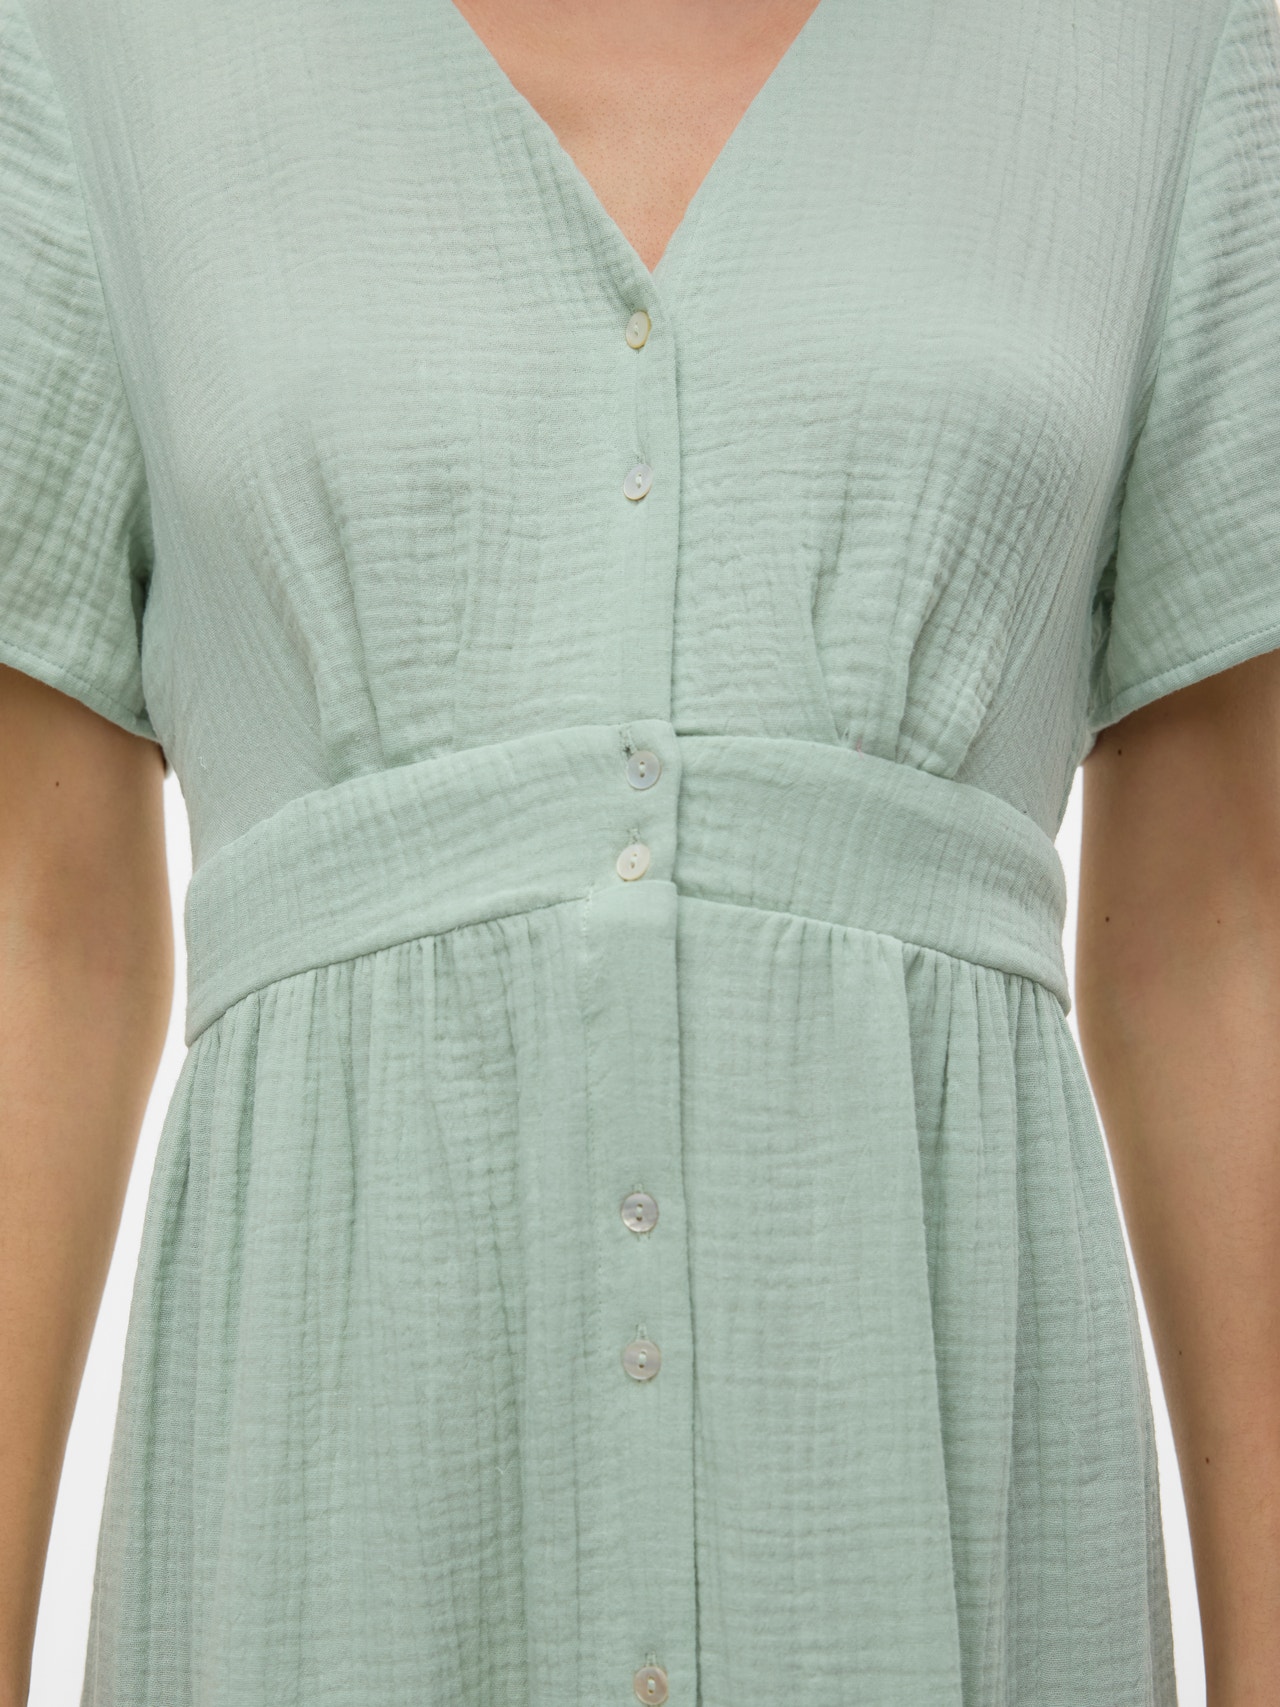 Vero Moda VMNATALI Robe longue -Silt Green - 10303625